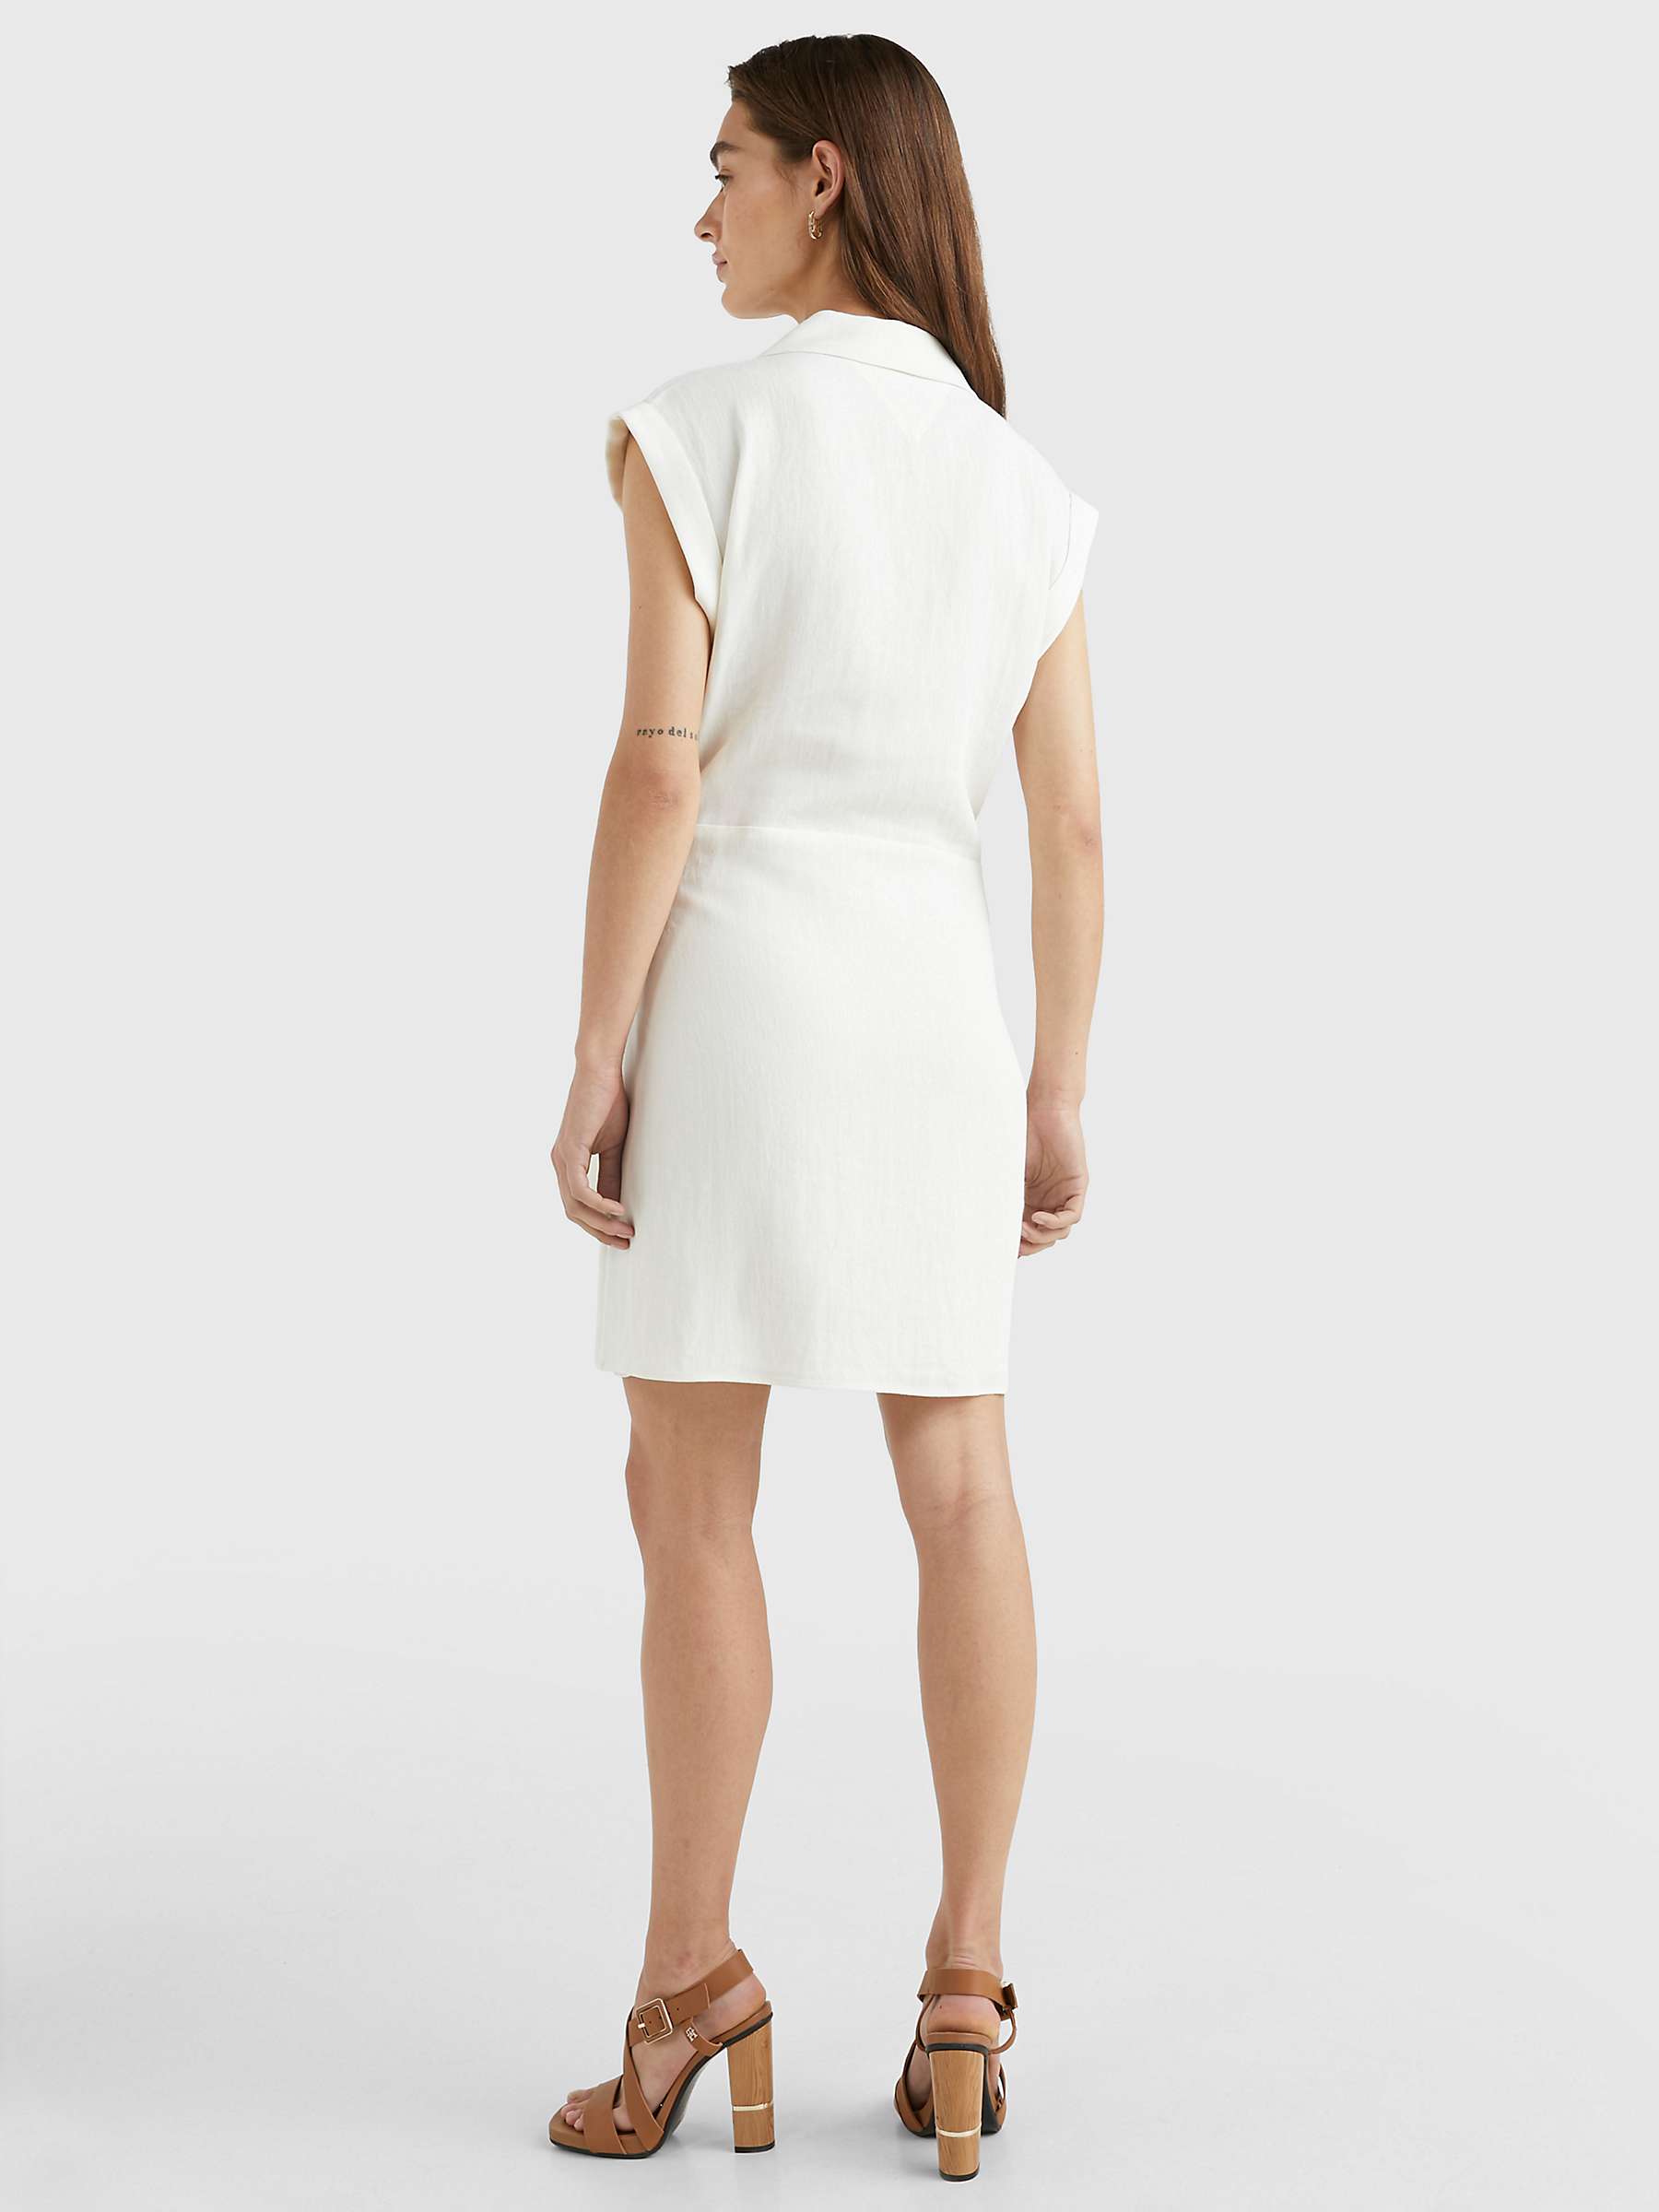 Buy Tommy Hilfiger Linen Blend Wrap Dress, Ecru Online at johnlewis.com